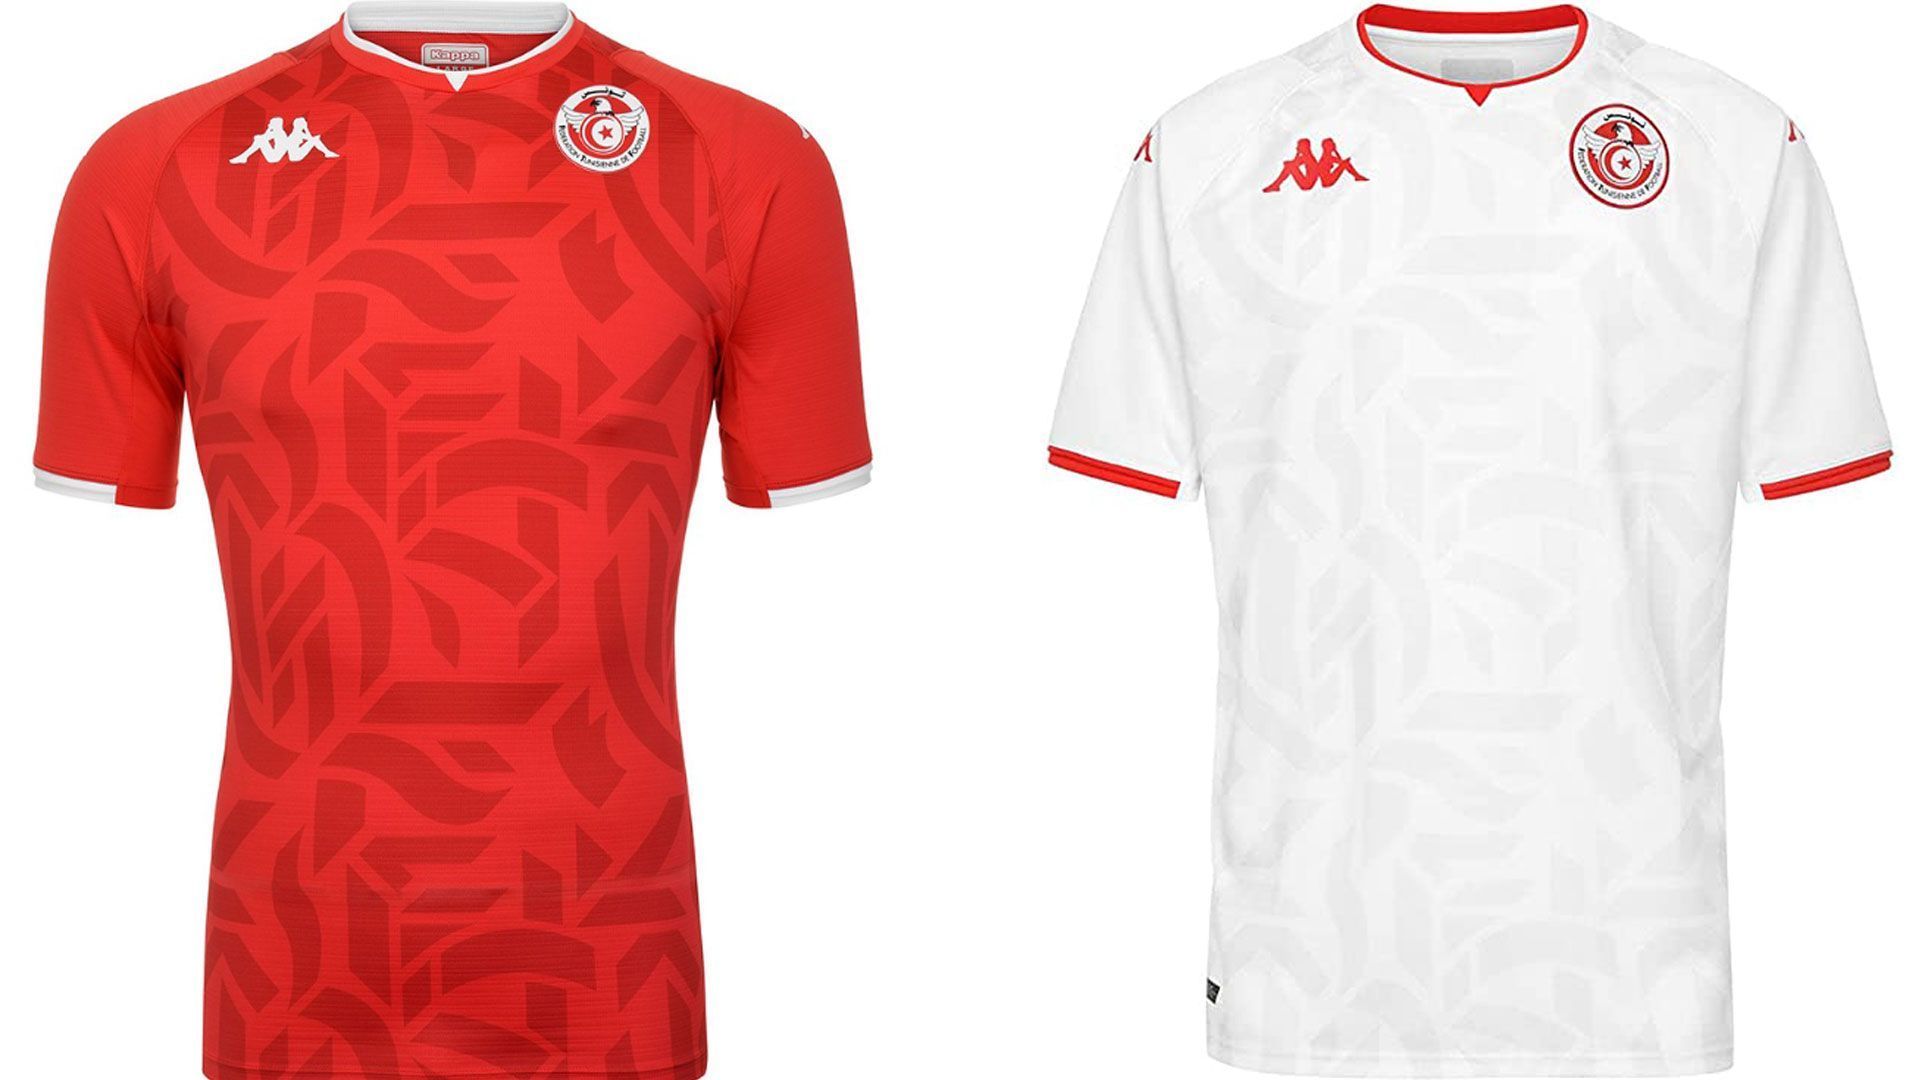 
                <strong>Tunesien</strong><br>
                In zwei nahezu identischen Designs läuft bei der WM Tunesien aufs Feld. Das Heim- und Auswärtstrikot unterscheiden sich einzig in der Grundfarbe Weiß und Rot, den Nationalfarben des nordafrikanischen Staates. Die Musterung, die auf dem roten Jersey besser zur Geltung kommt, ist auf beiden Varianten identisch. 
              